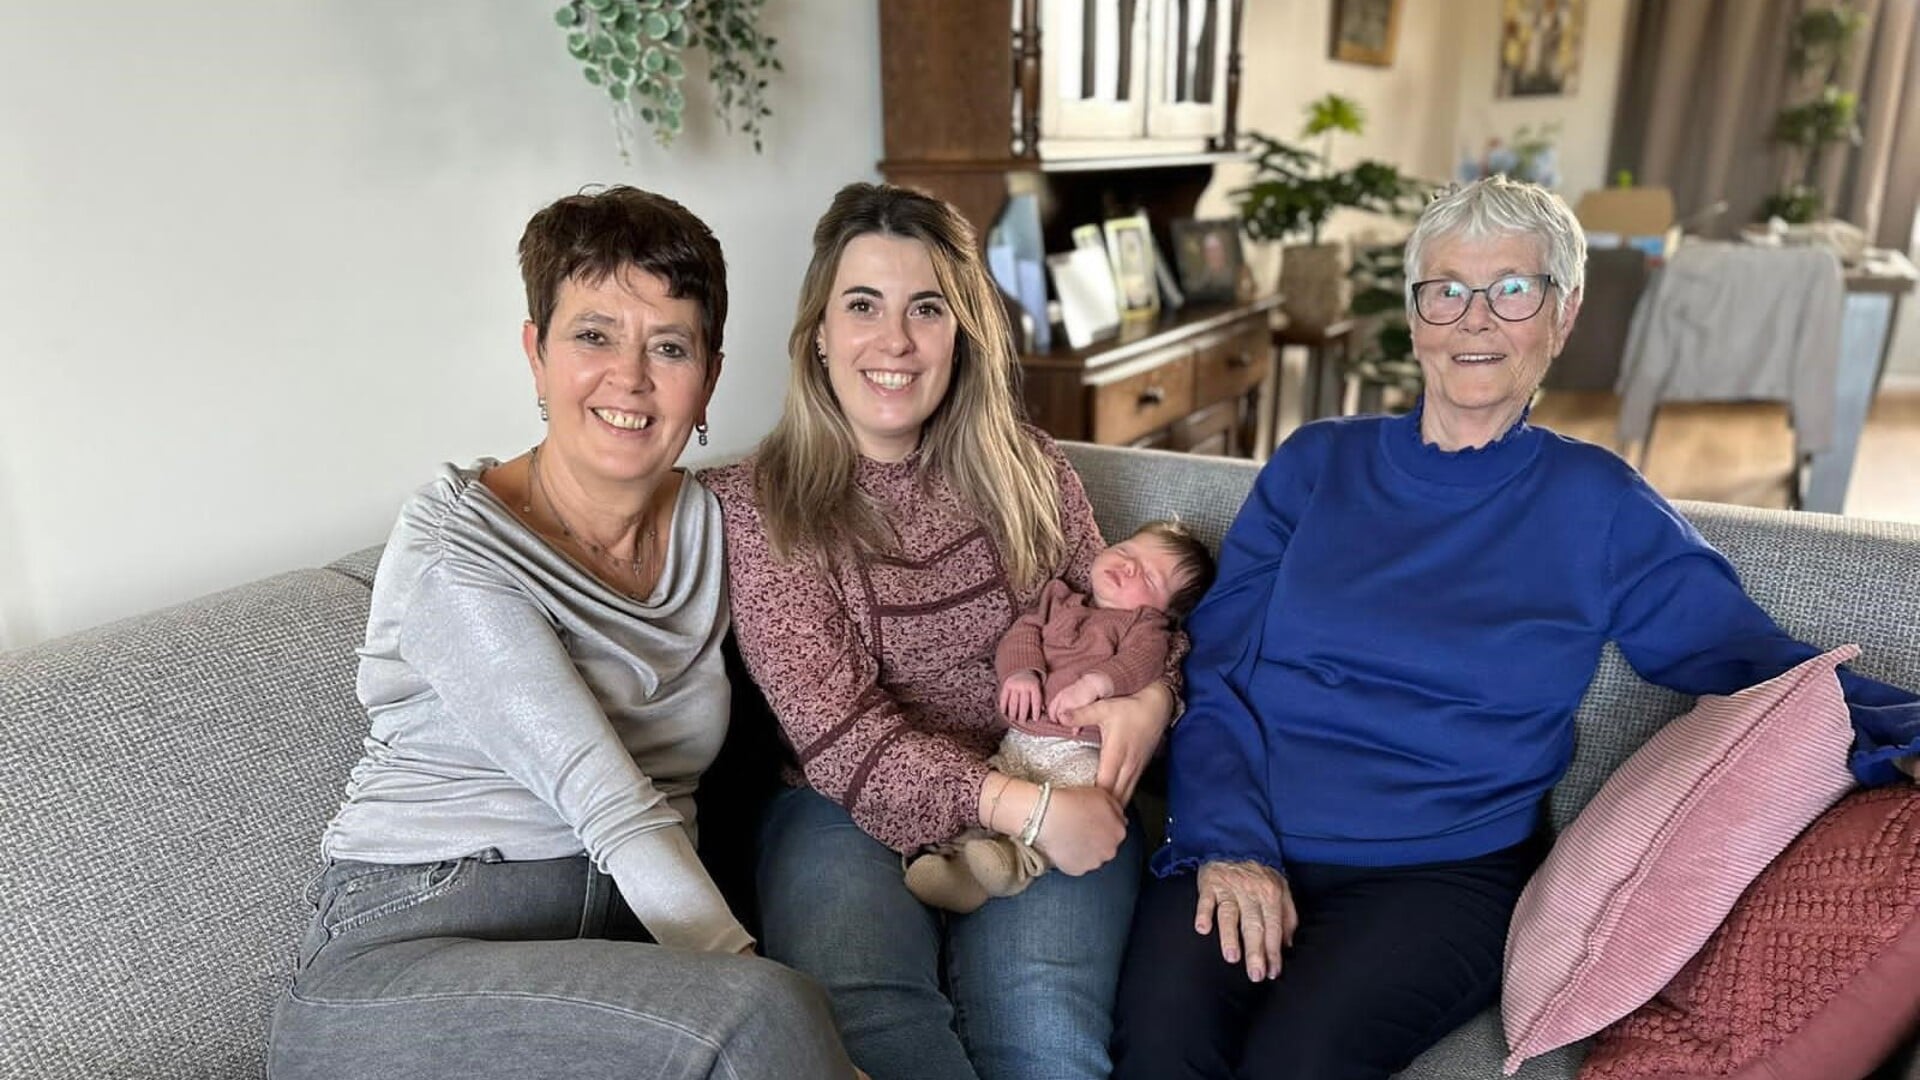 Vier generaties vanaf links oma Annemie, mama Lisa met Rosie en omi Stien.